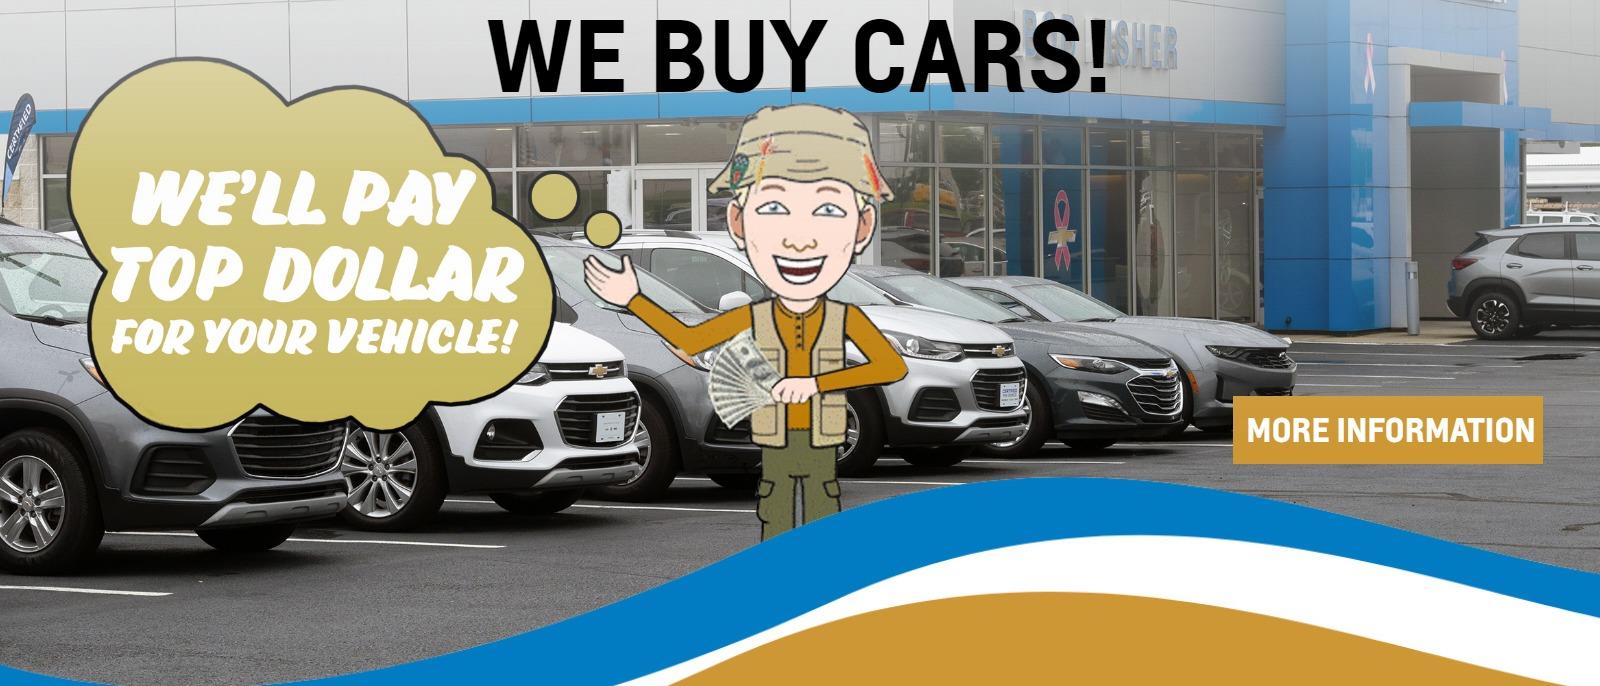 We Buy Cars!